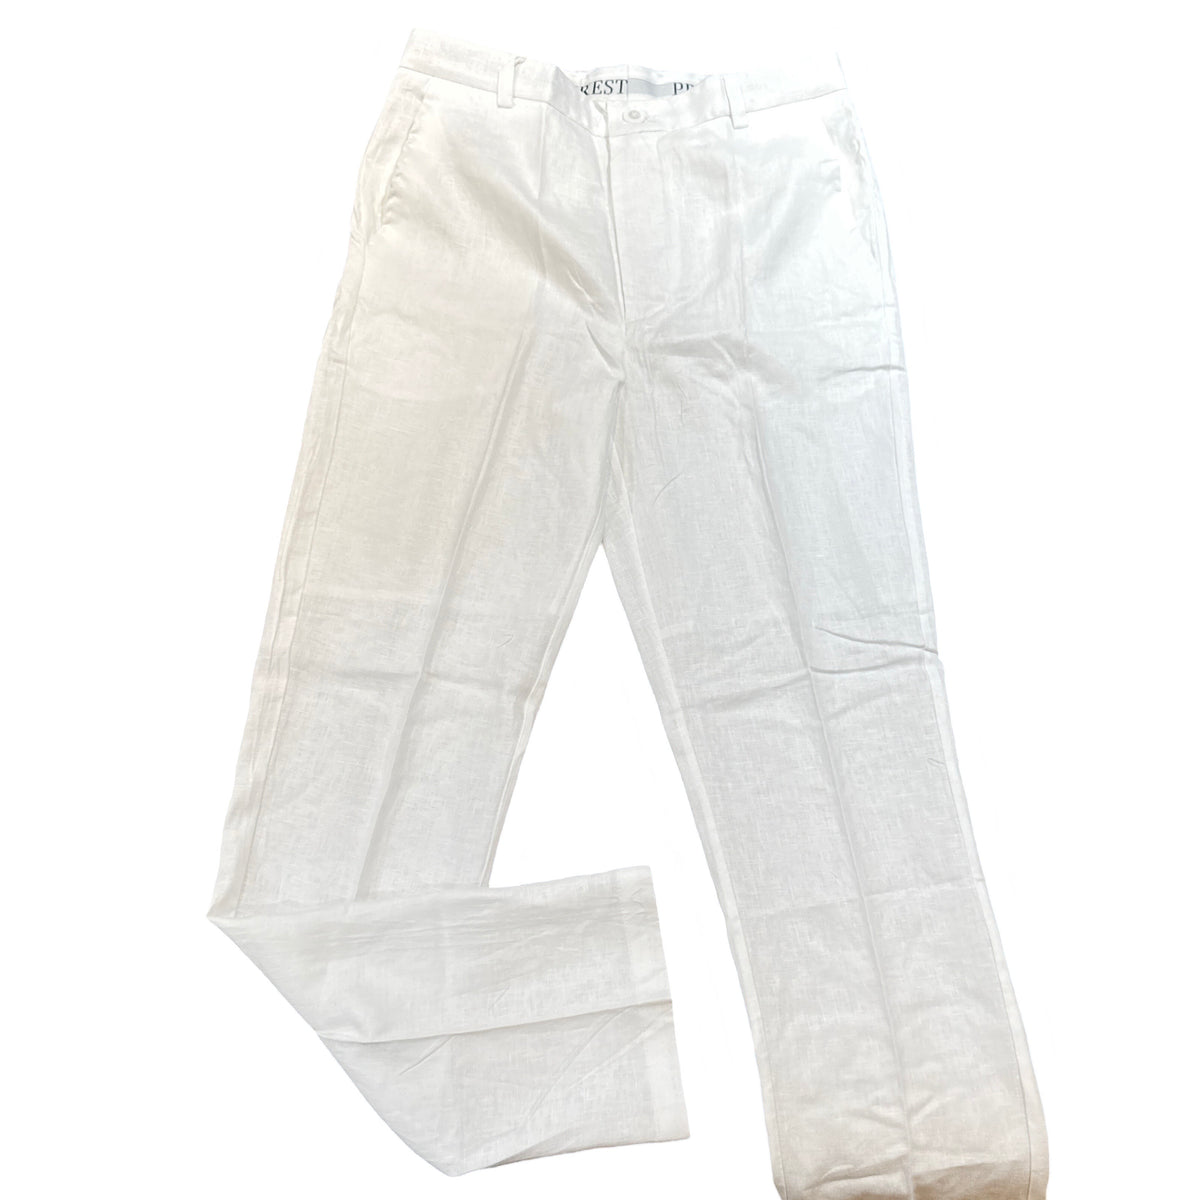 Prestige White Luxury Linen Pants - Dudes Boutique